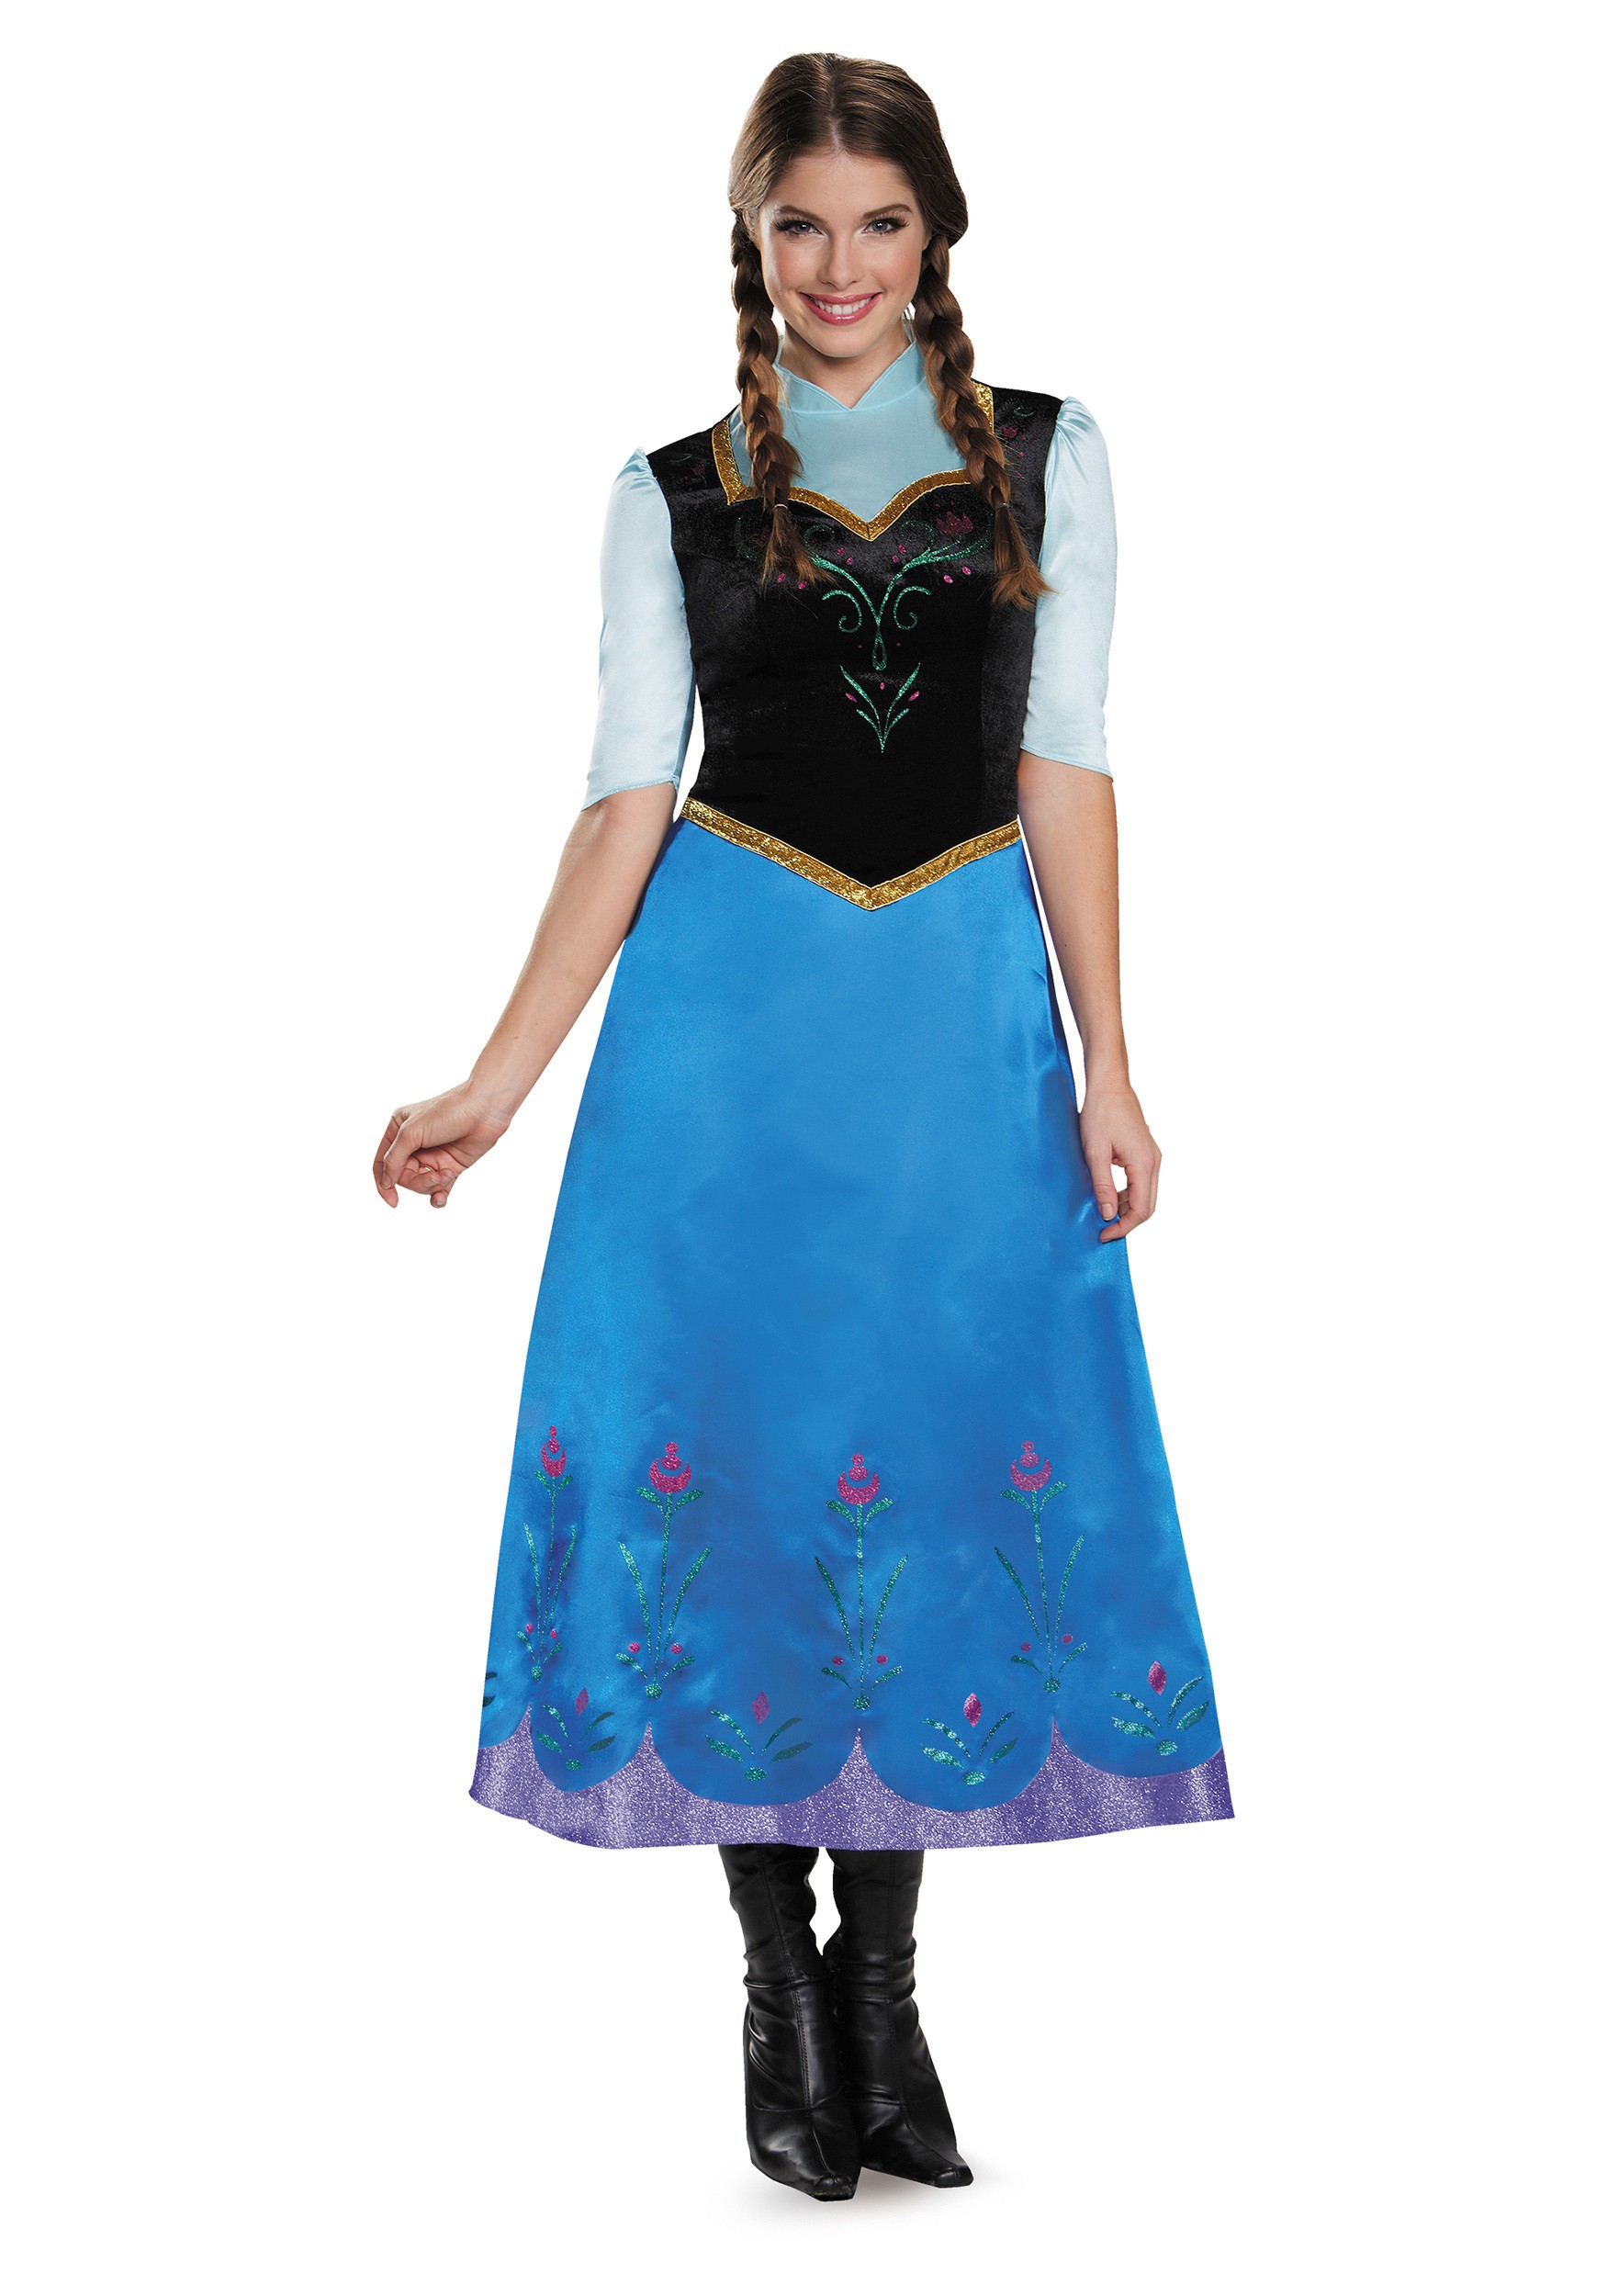 Frozen 2 Princess Anna Green Dress Costume Set, Halloween Costume,  Christmas Gift - Princess Rapunzel Shop